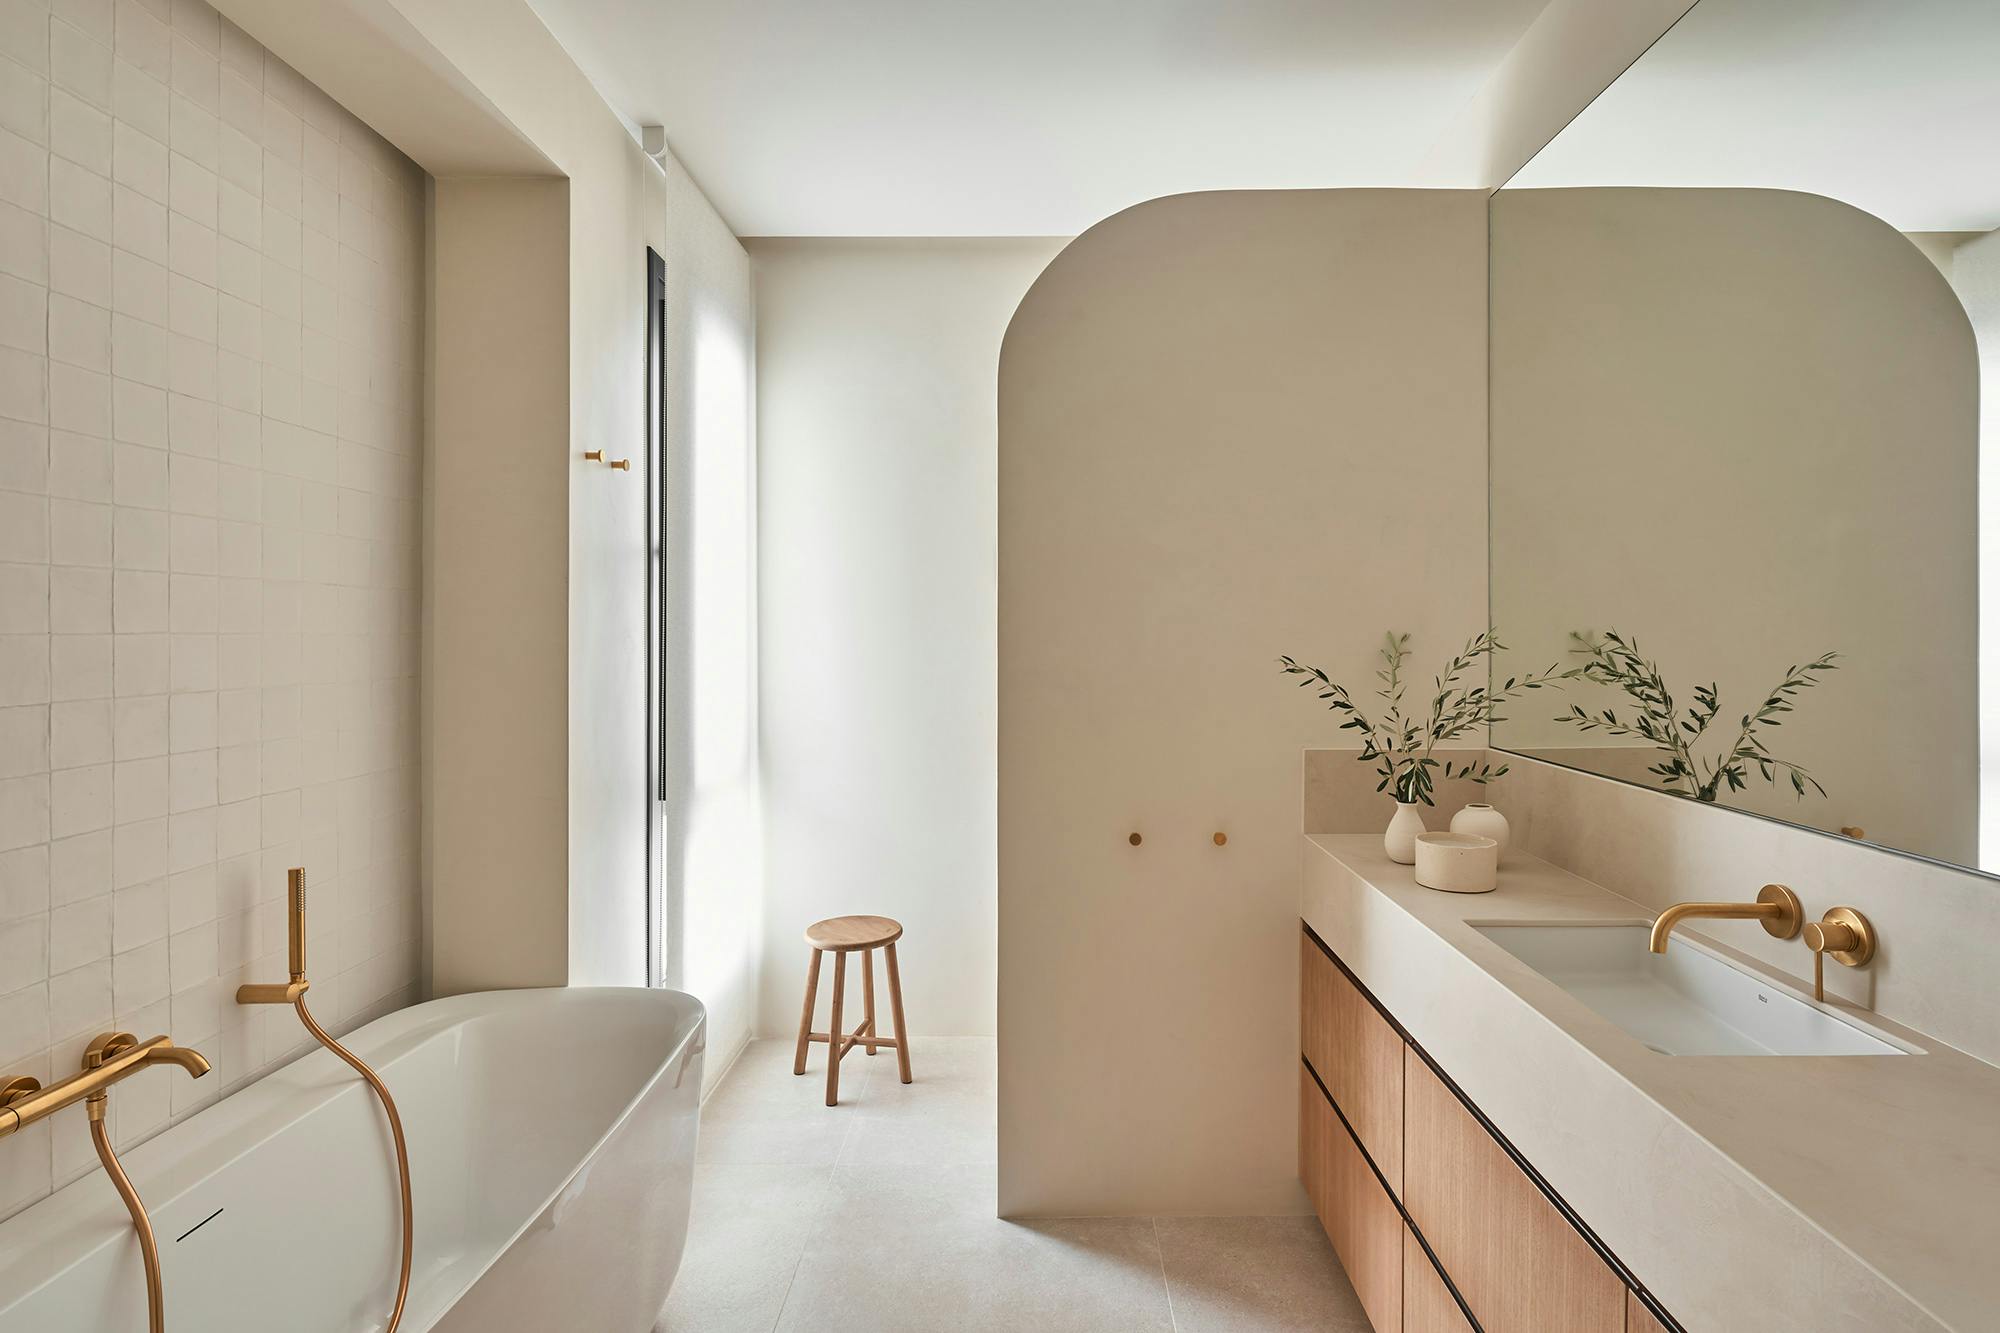 Encimeras de baño a medida: 4 ideas de baños de diseño - Cosentino España